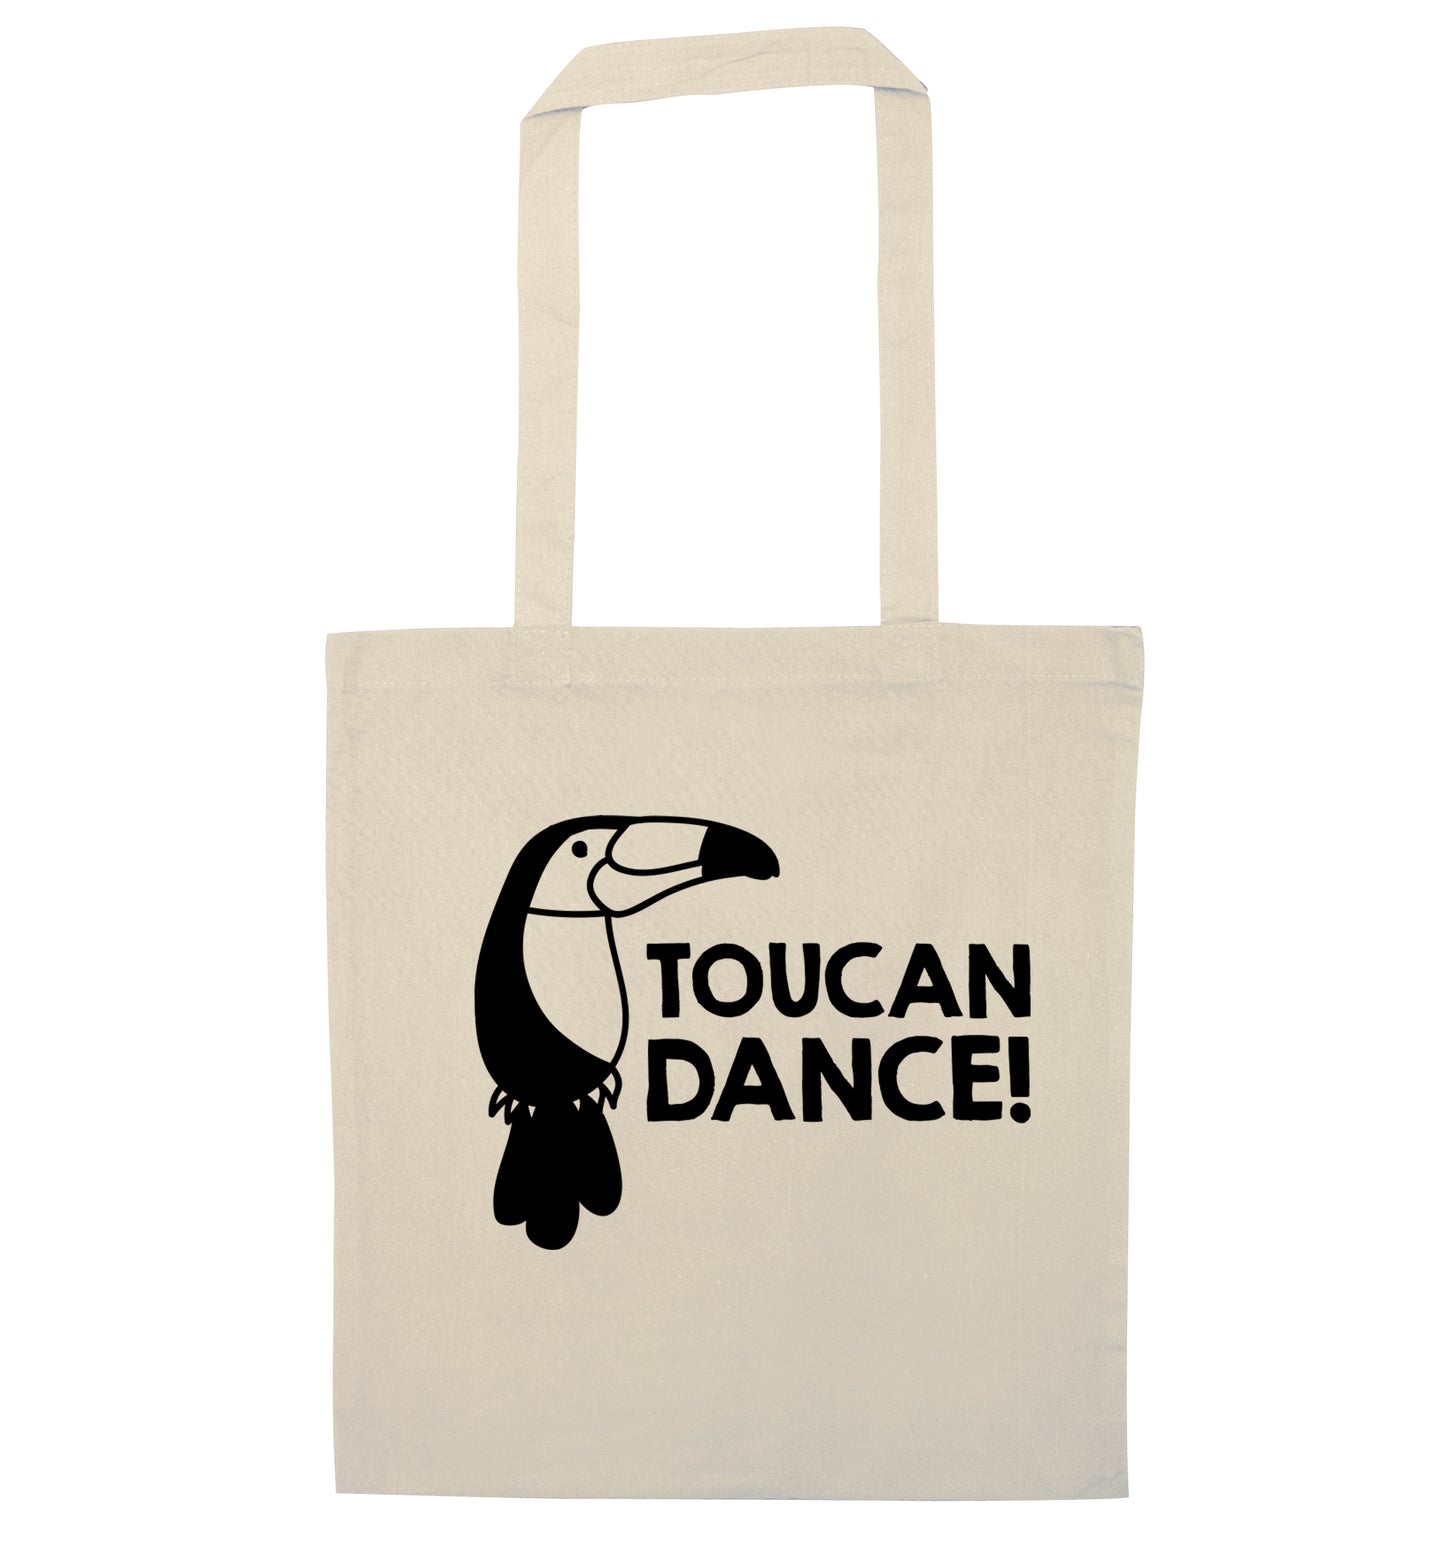 Toucan dance natural tote bag